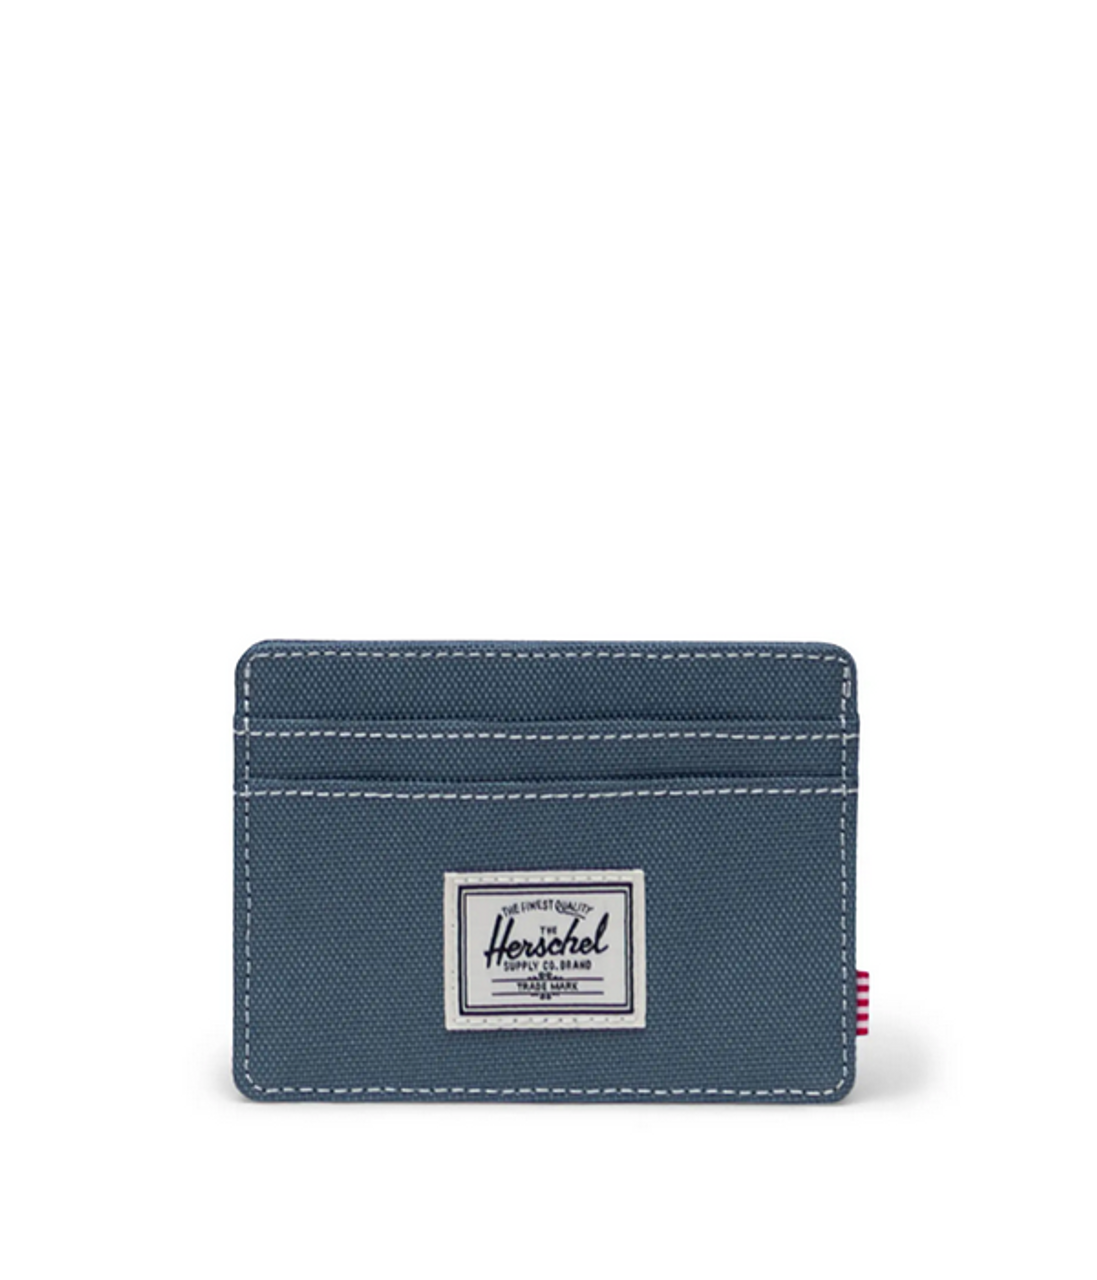 HERSCHEL Charlie Cardholder Wallet Blue Mirage/White Stitch Men's Wallets Herschel Supply Company 